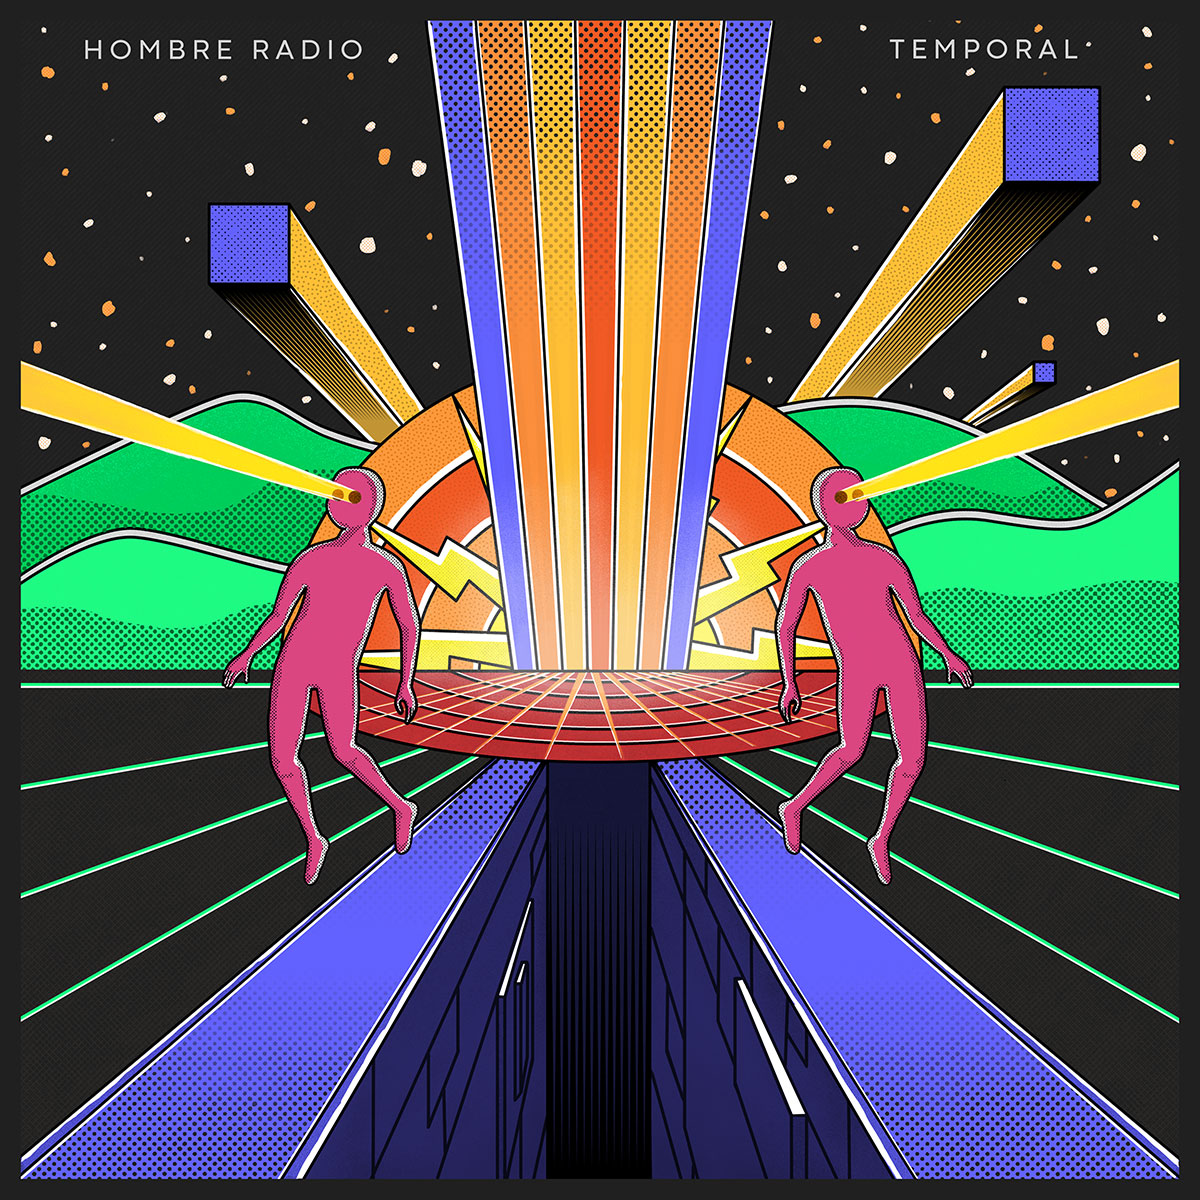  Escucha “Temporal” el nuevo sencillo de Hombre Radio